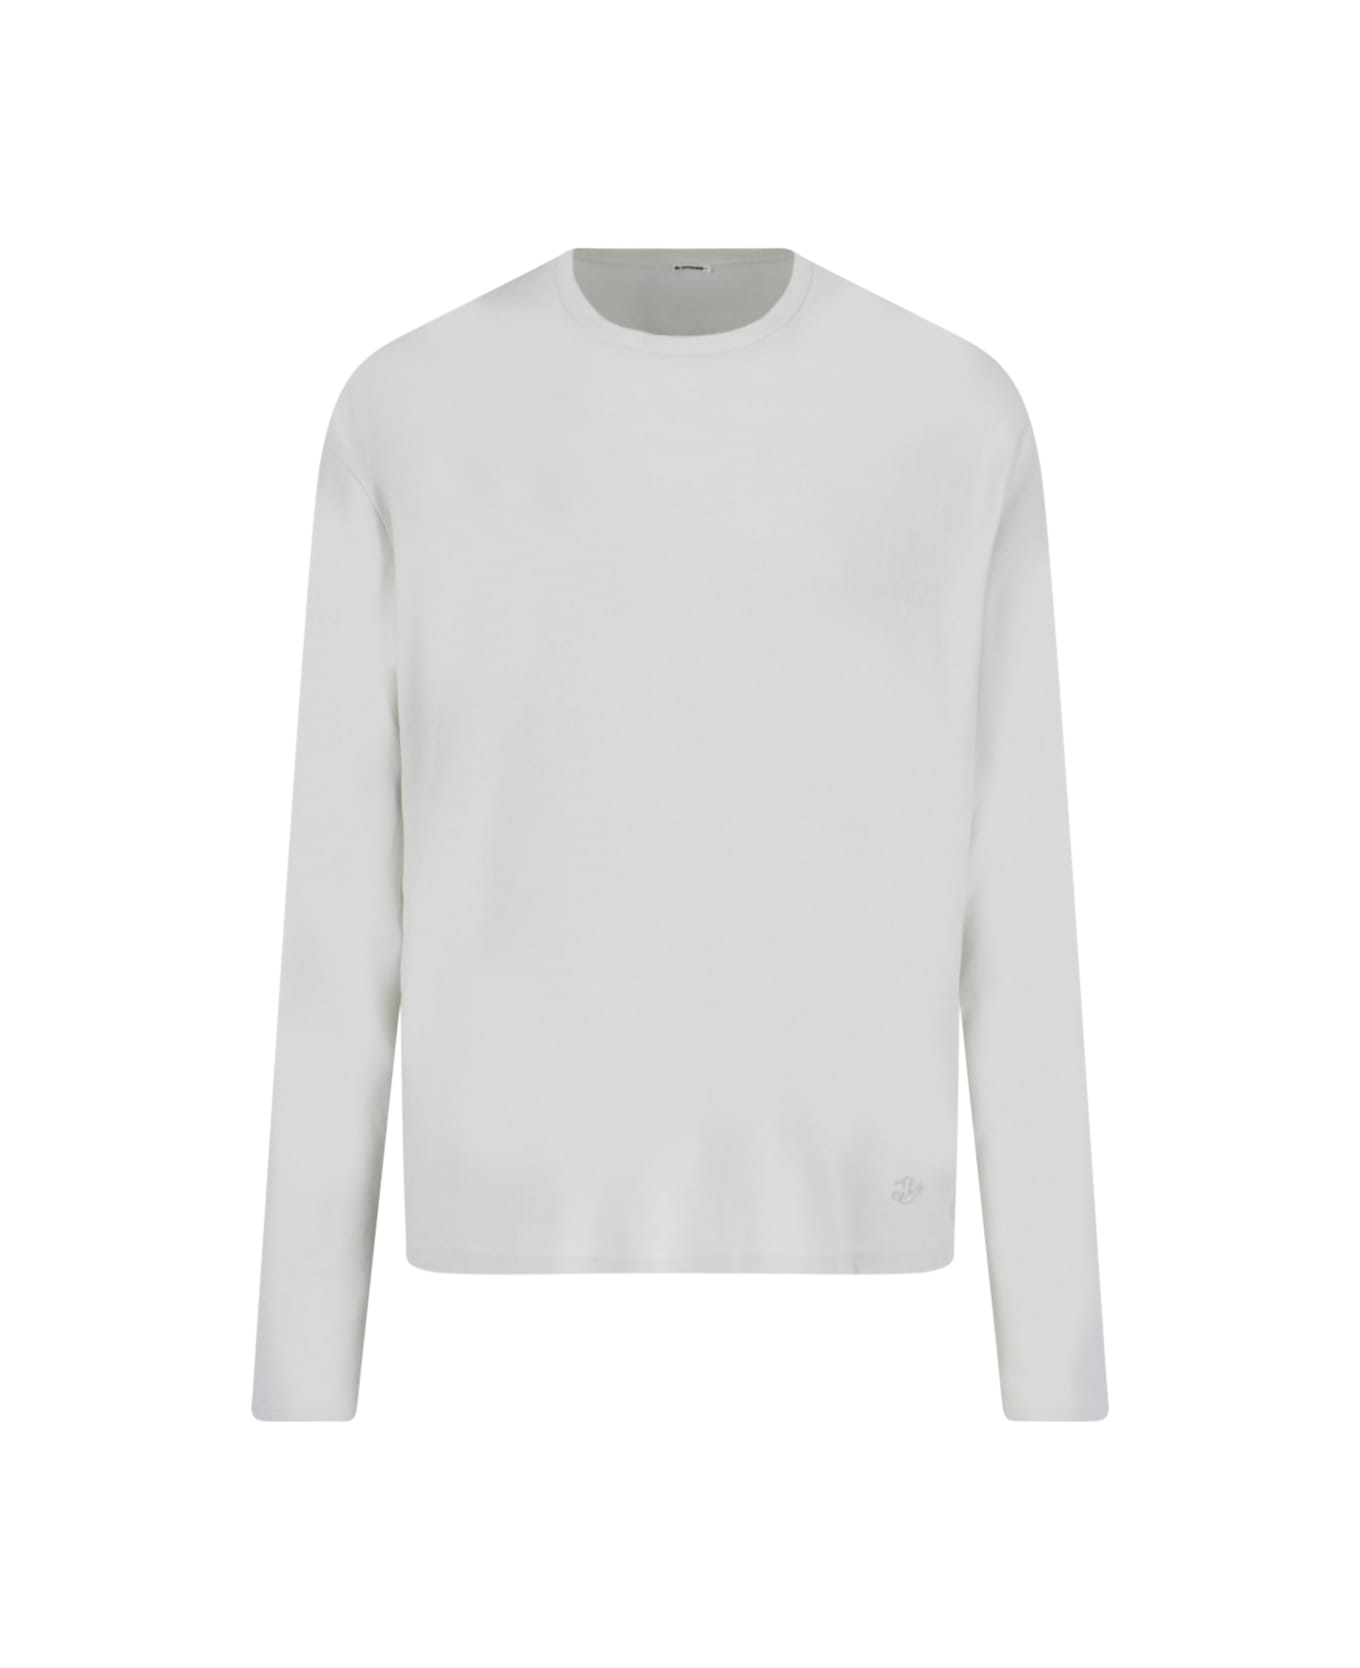 Jil Sander '3-pack' T-shirt Set - White